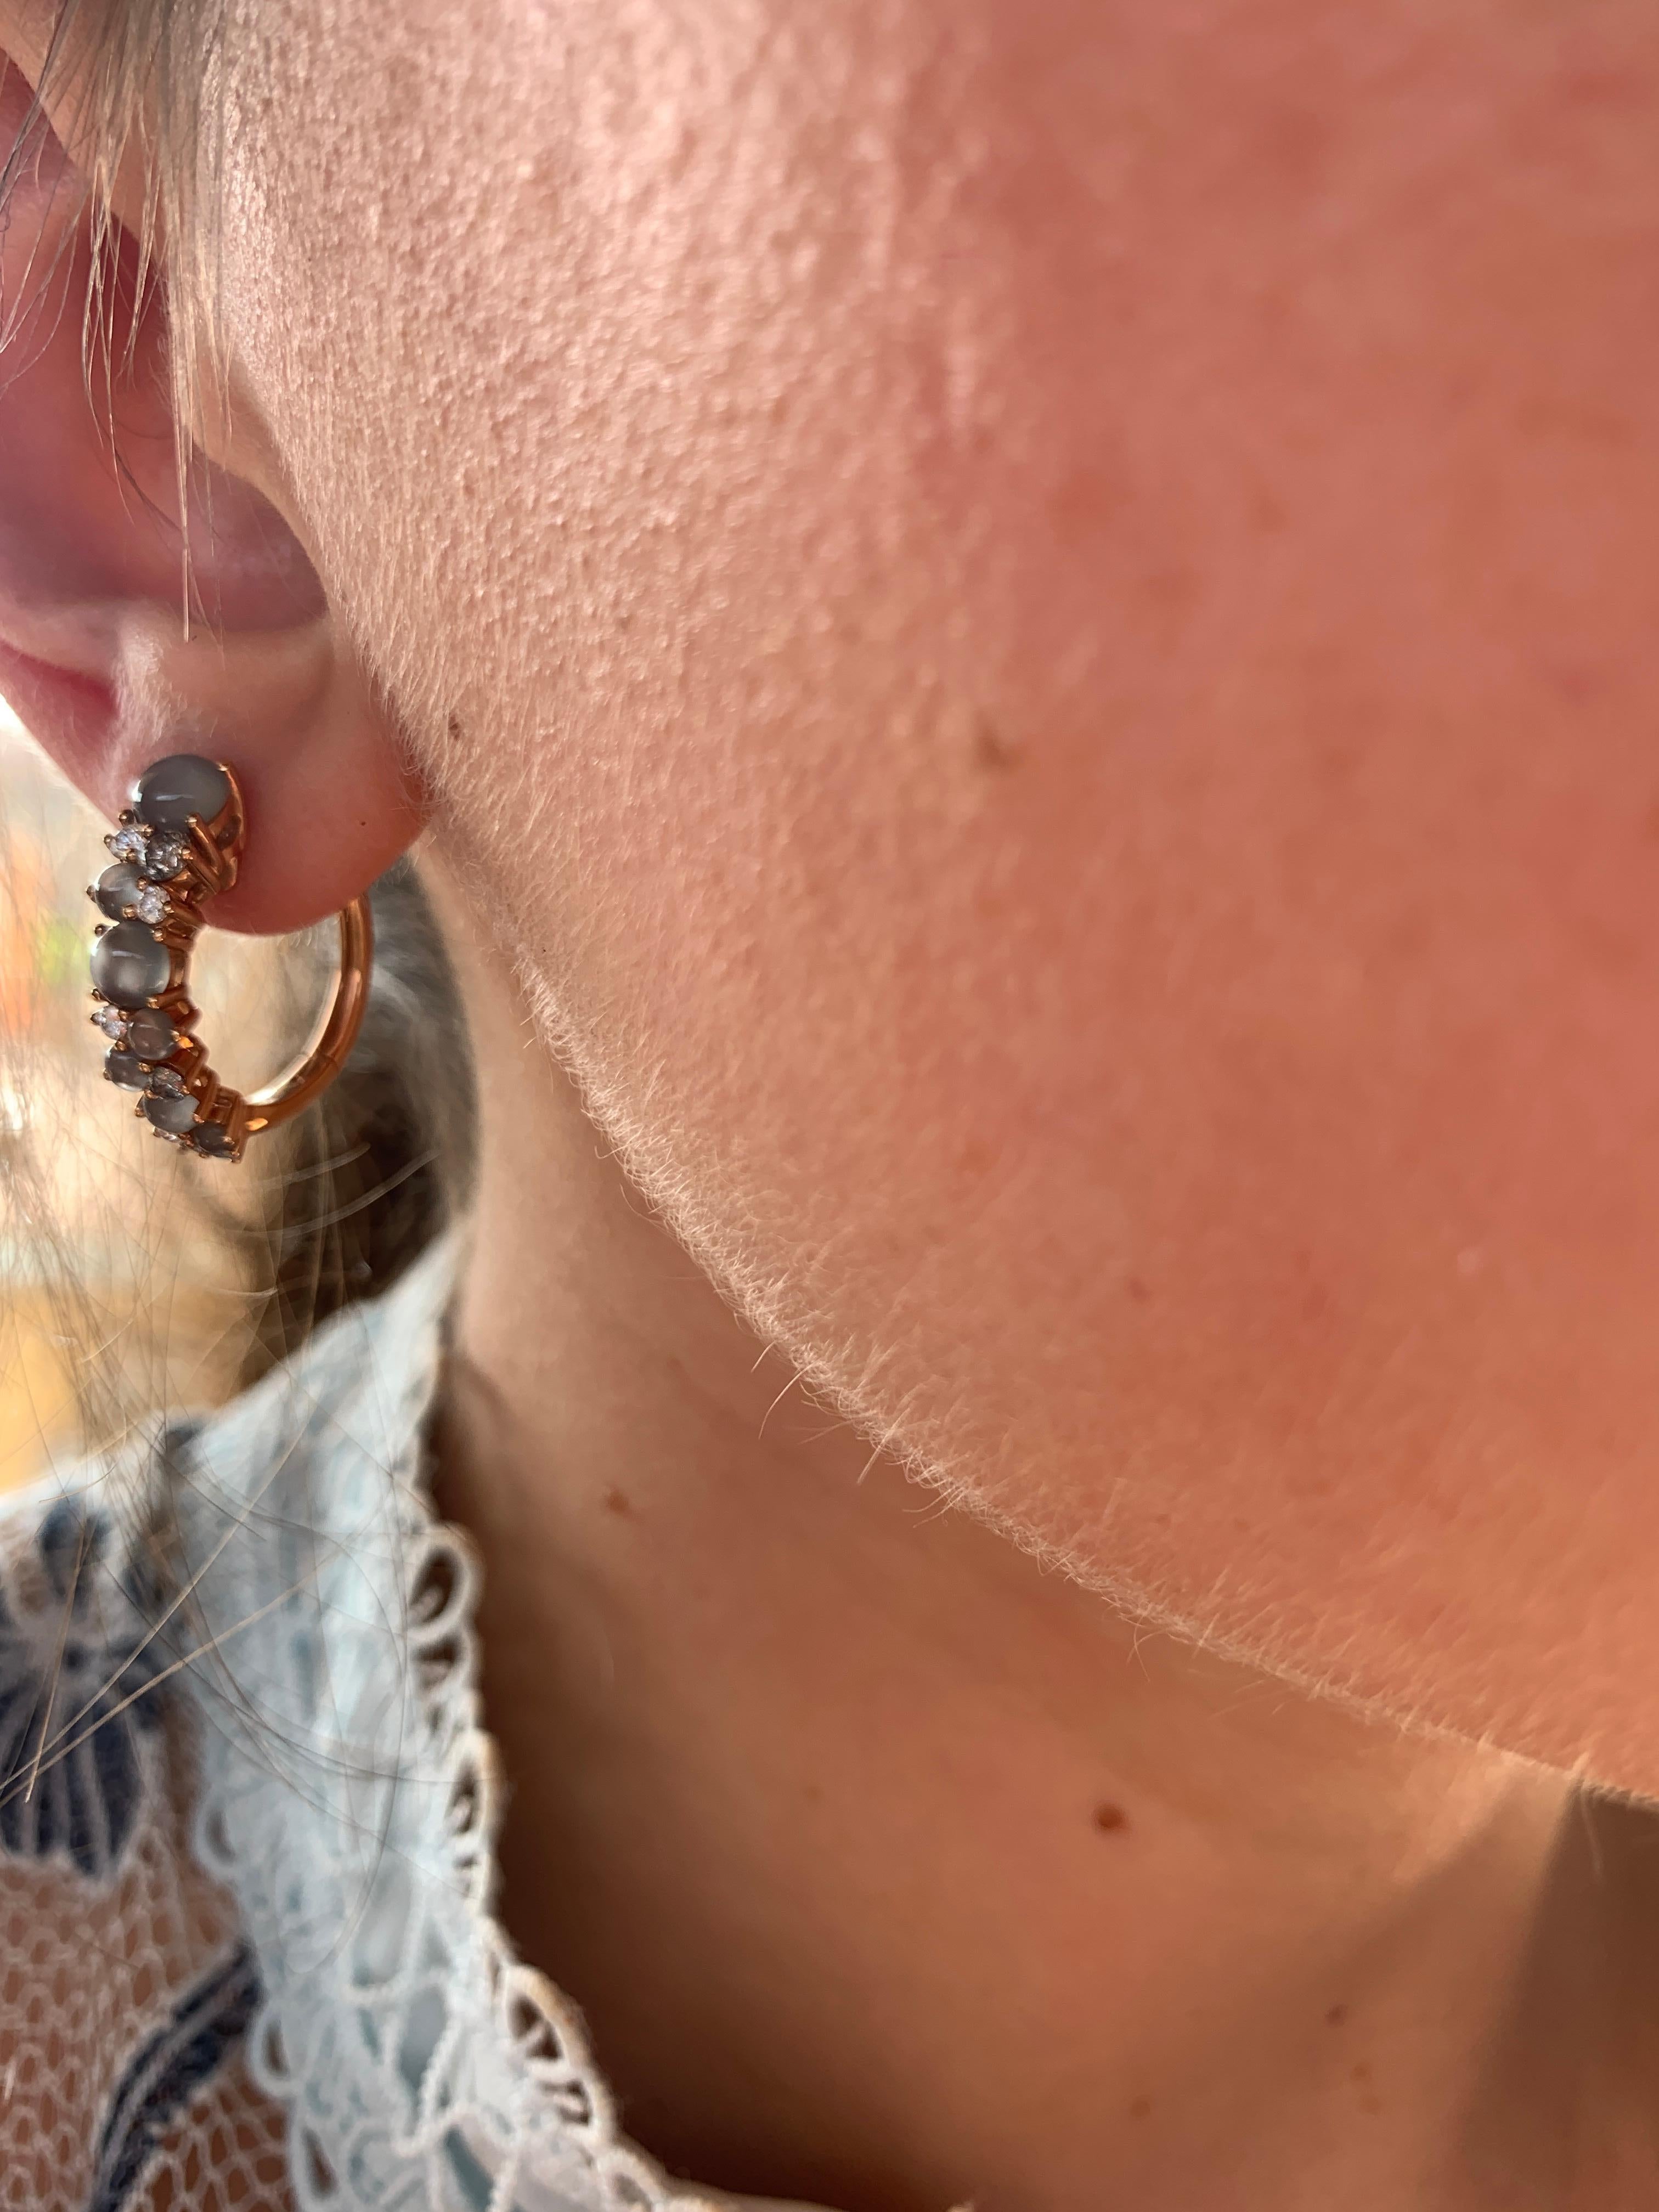 moon rock earrings